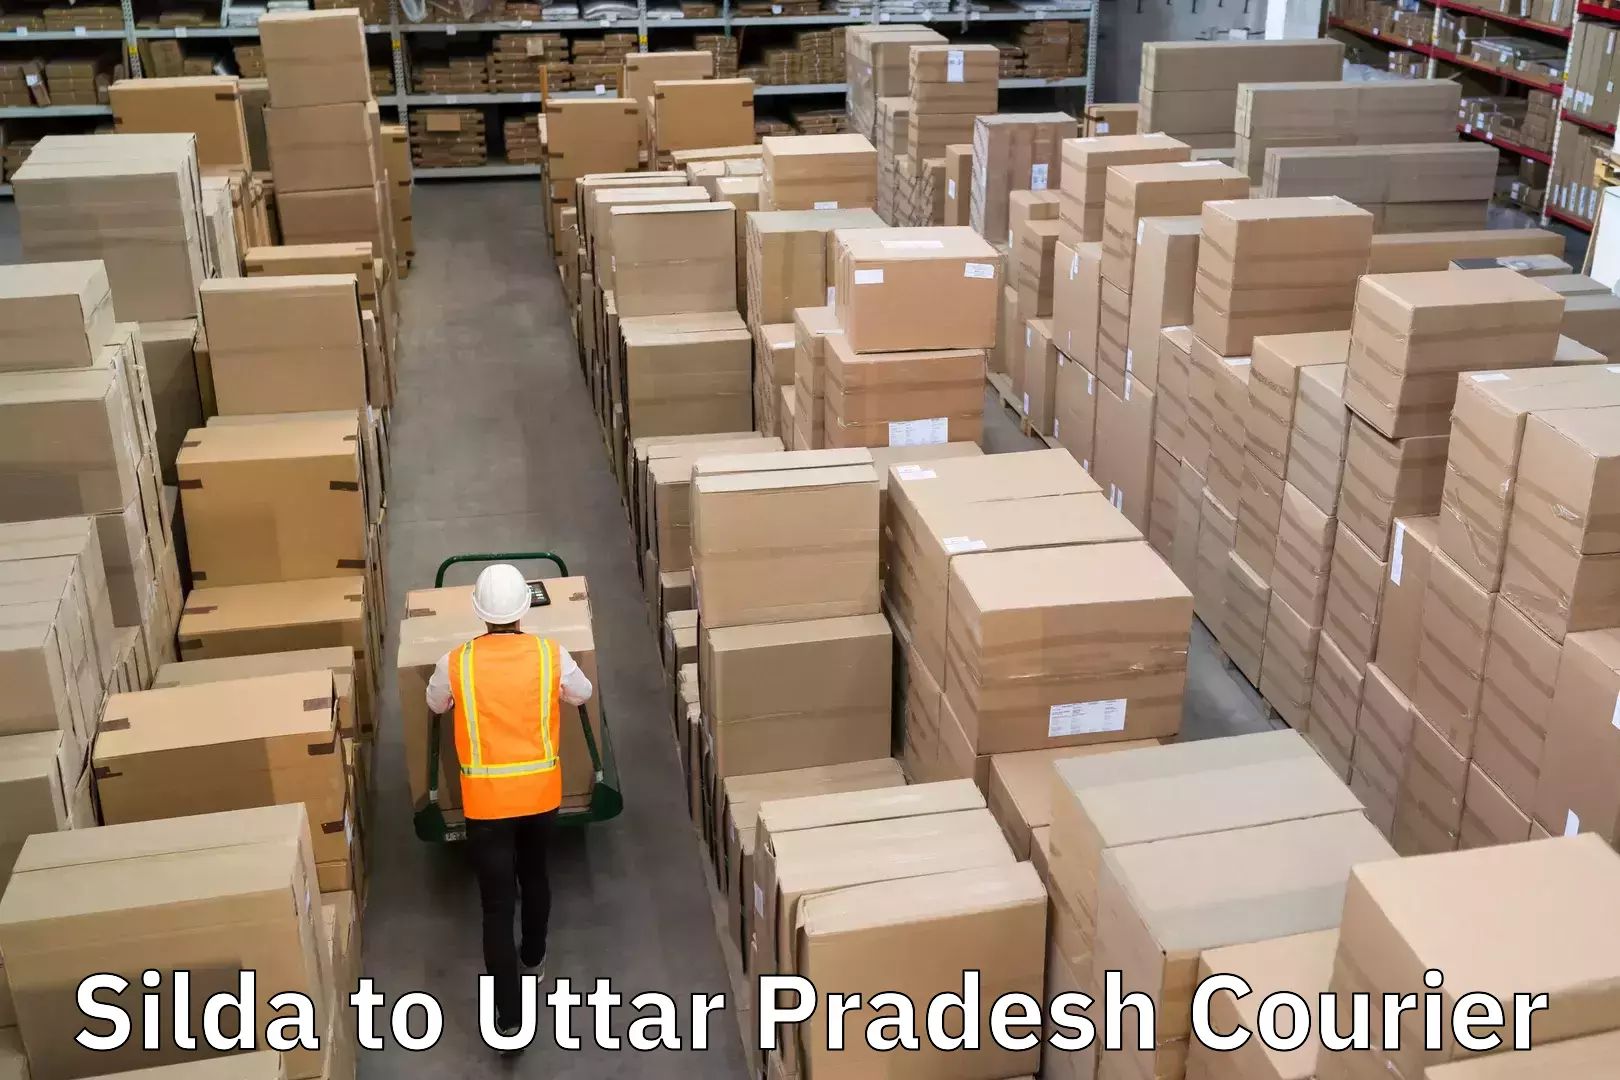 Nationwide parcel services Silda to Uttar Pradesh